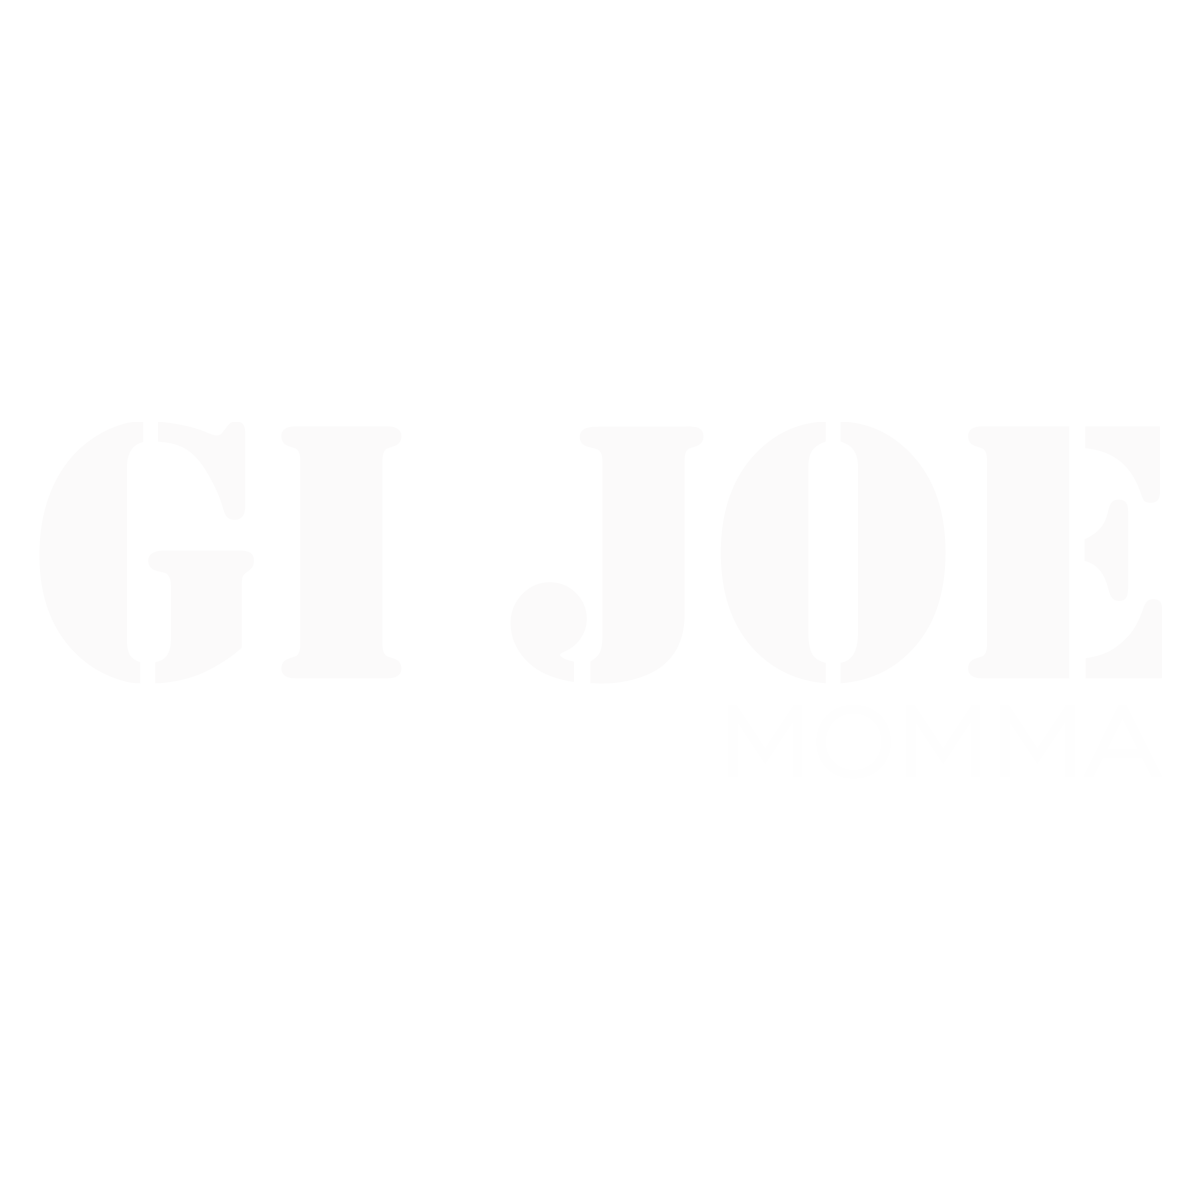 GI JOE MOMMA